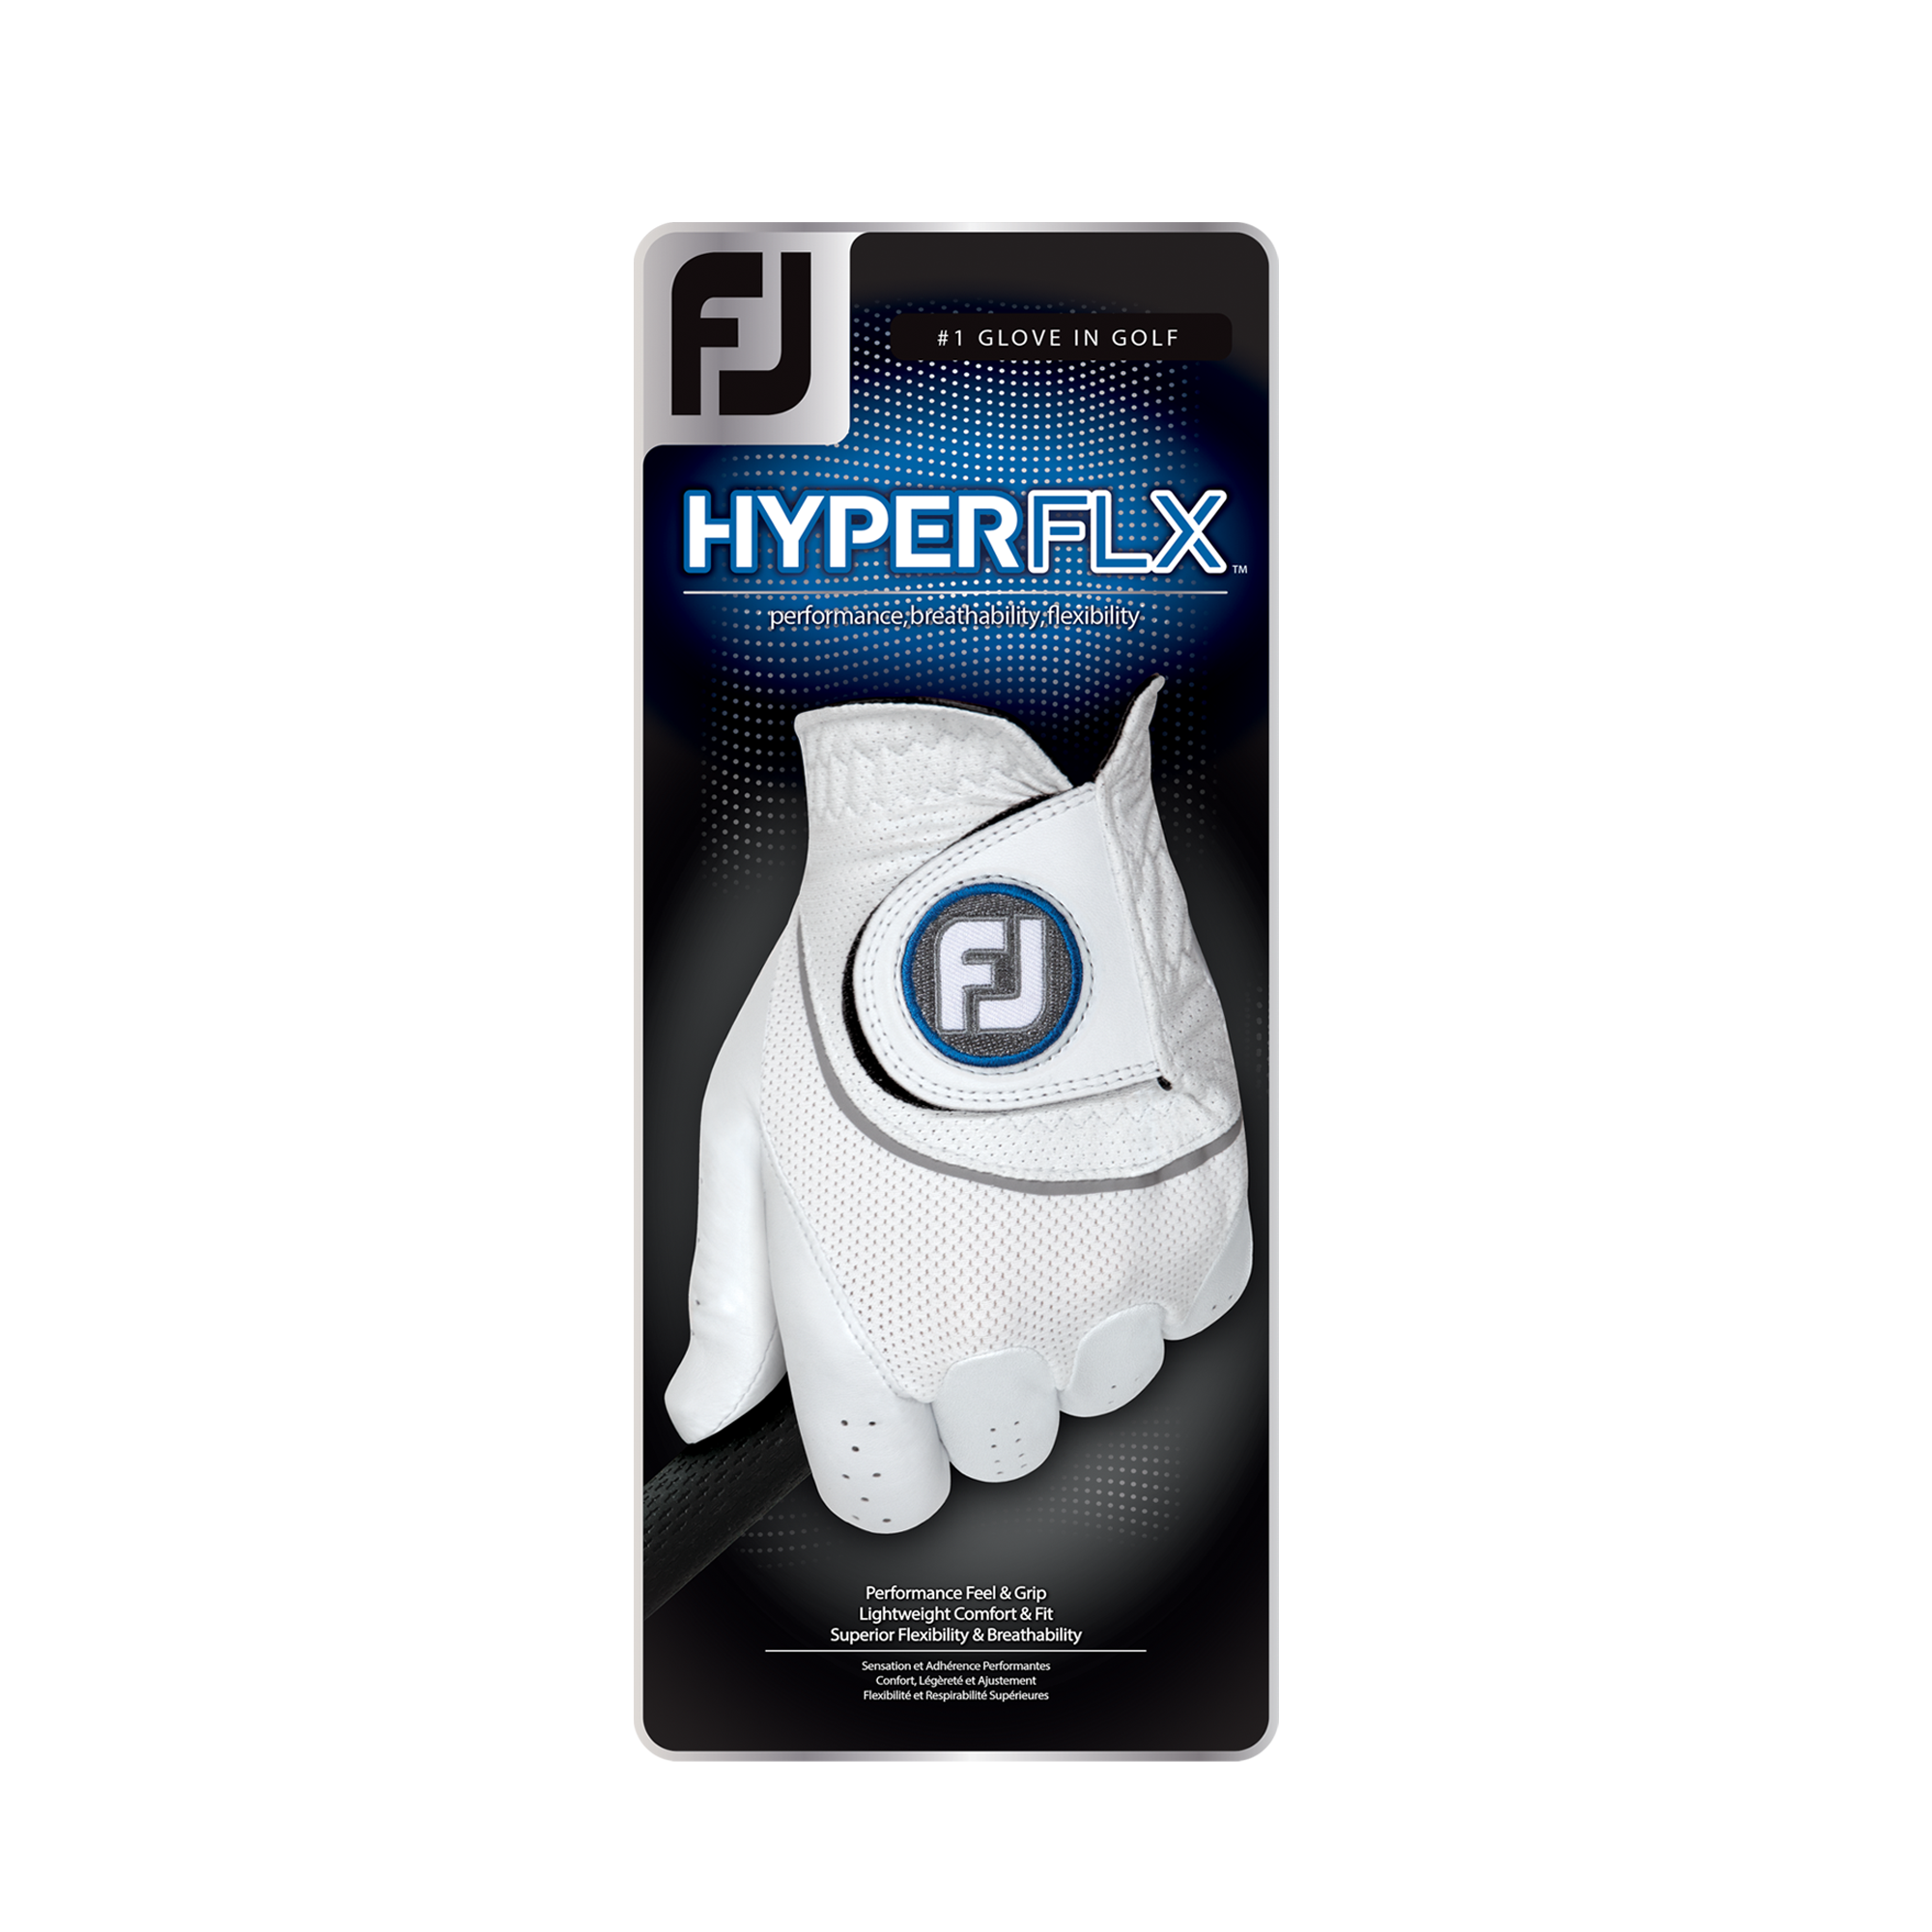 HyperFLX